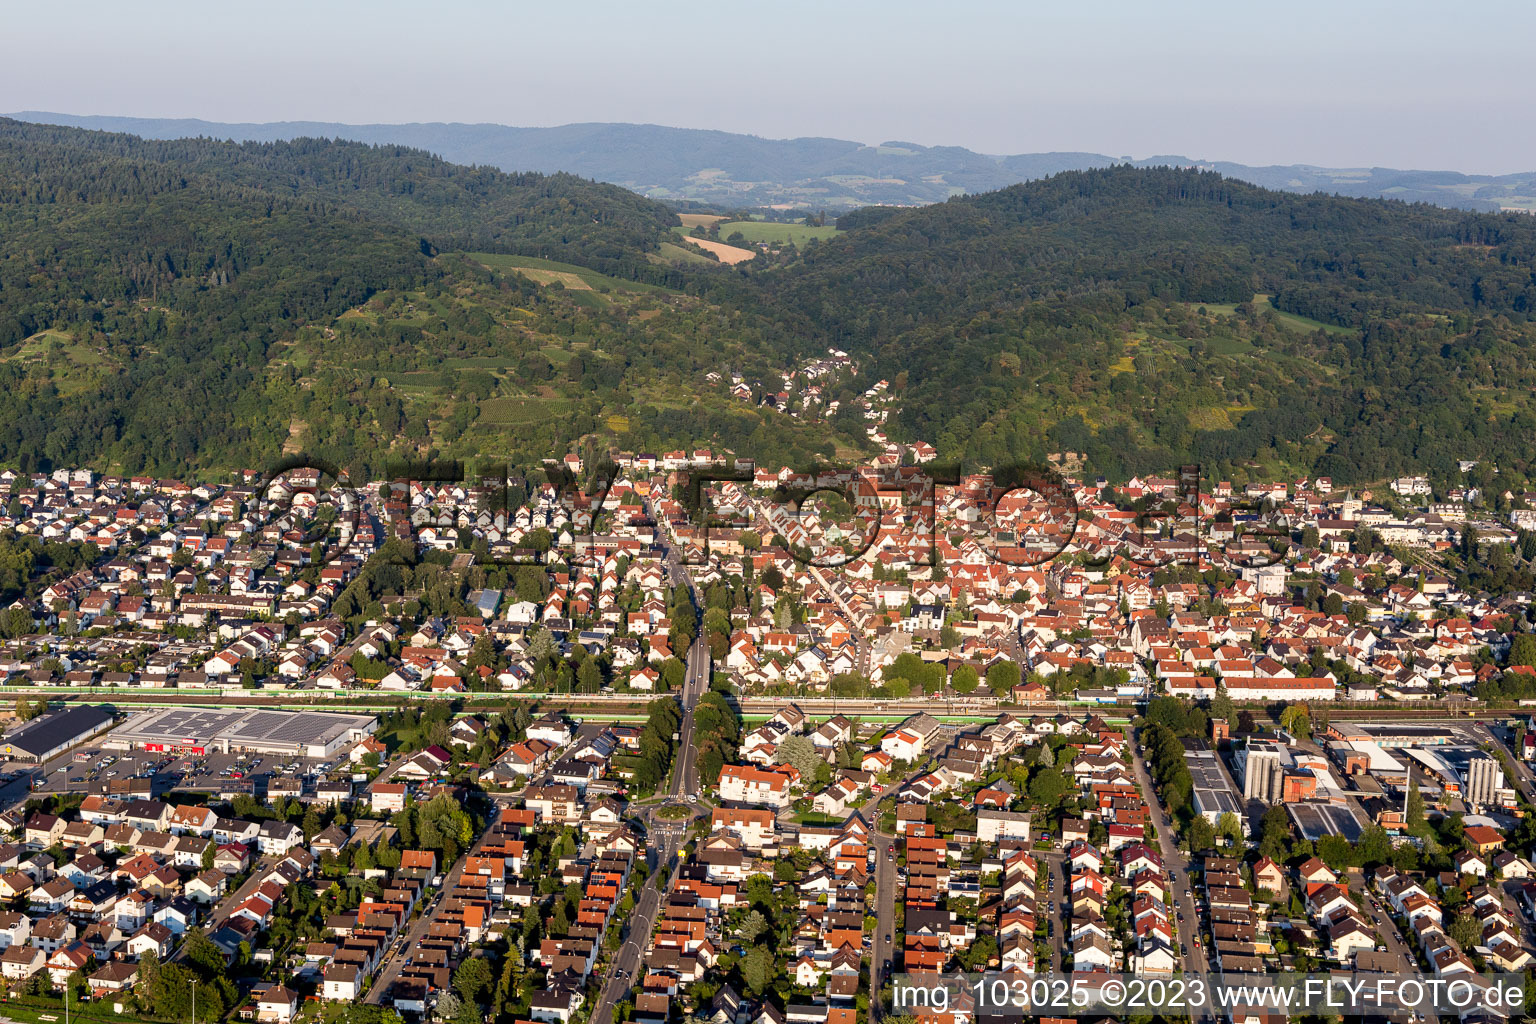 Hemsbach dans le département Bade-Wurtemberg, Allemagne du point de vue du drone